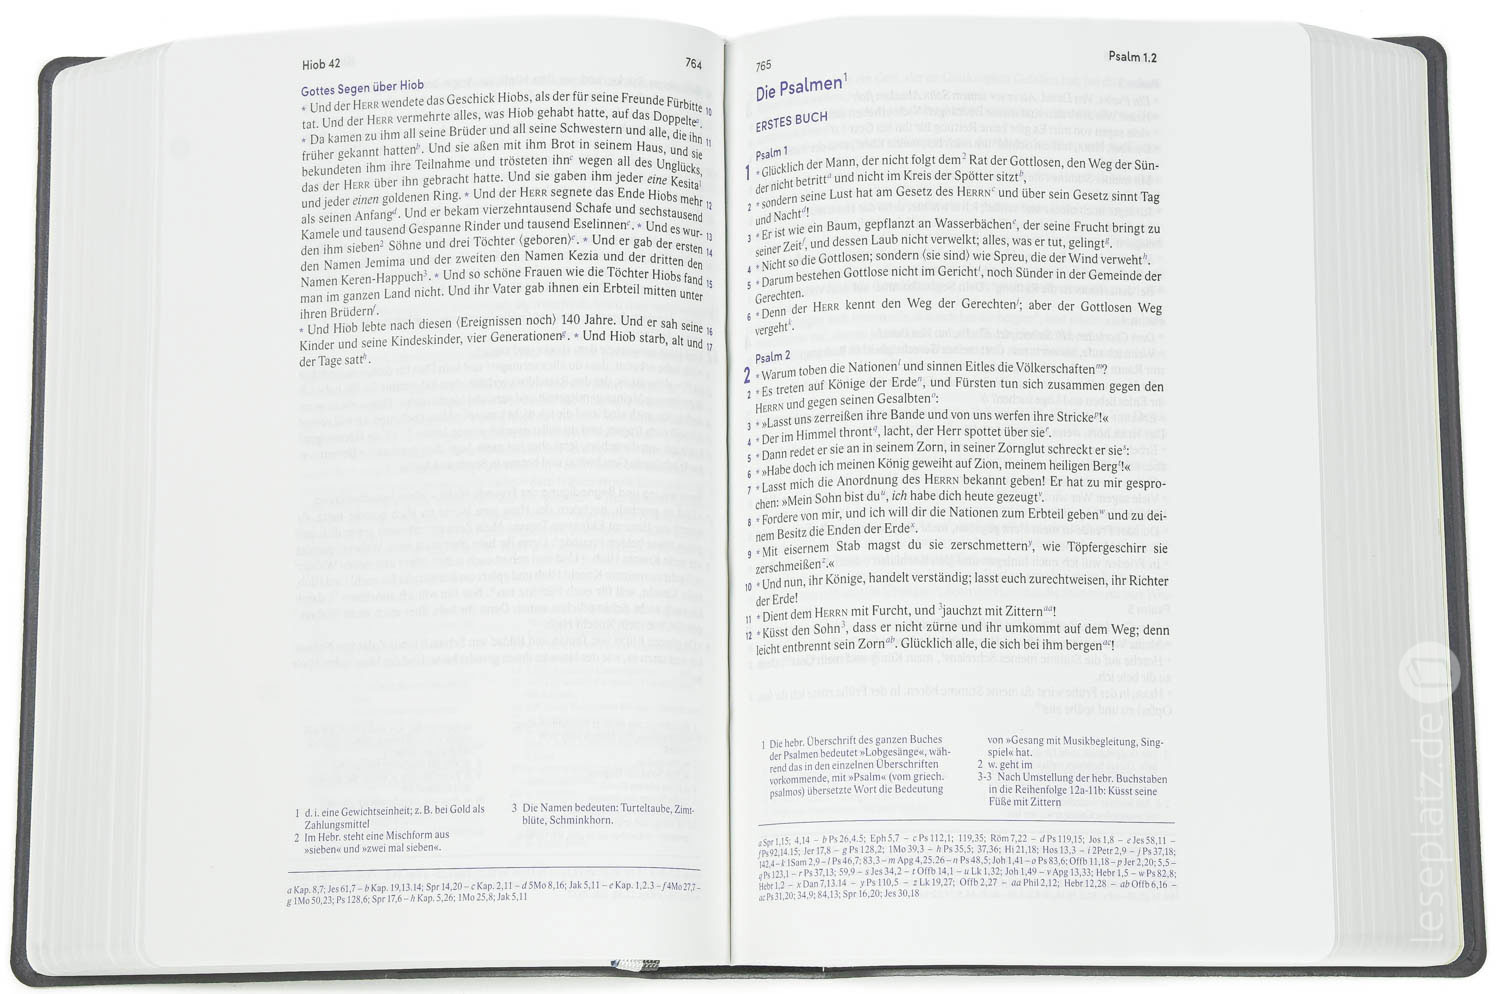 Elberfelder Bibel 2006 mit Schreibrand / Leder grau